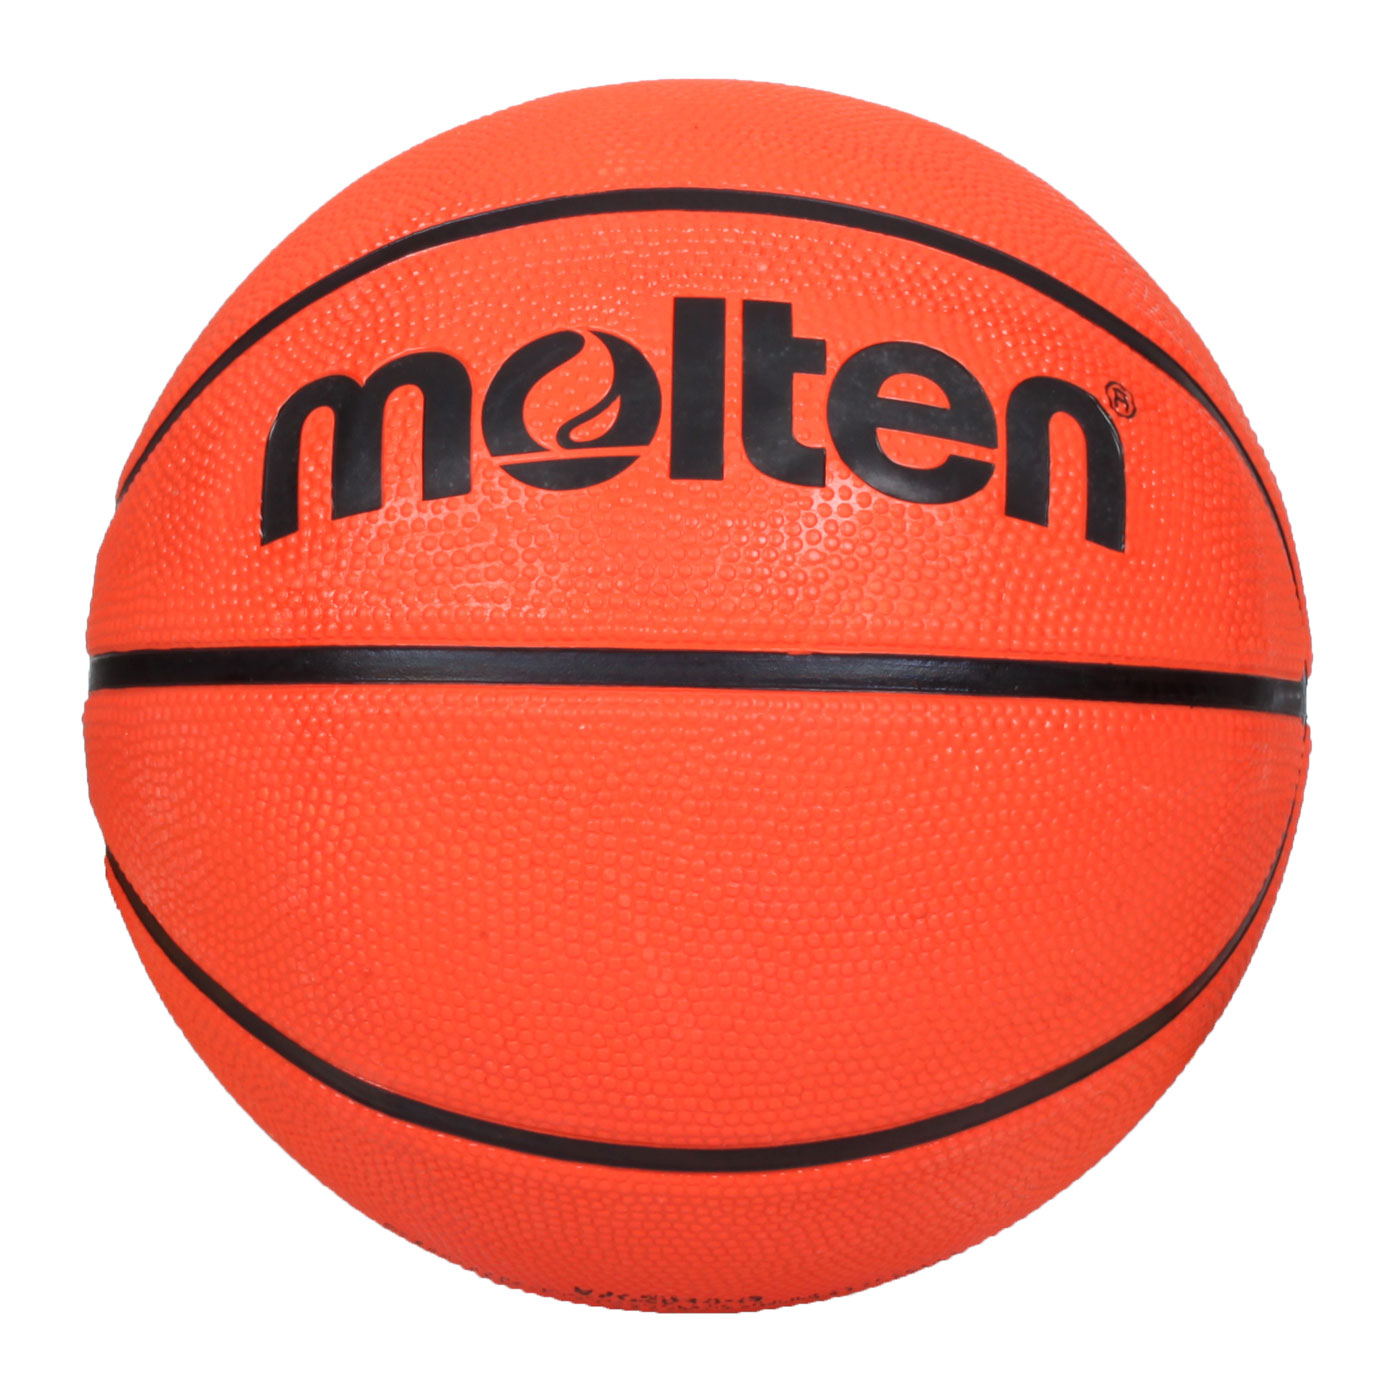 Molten 8片深溝橡膠7號籃球 B7C2010-O - 亮橘黑